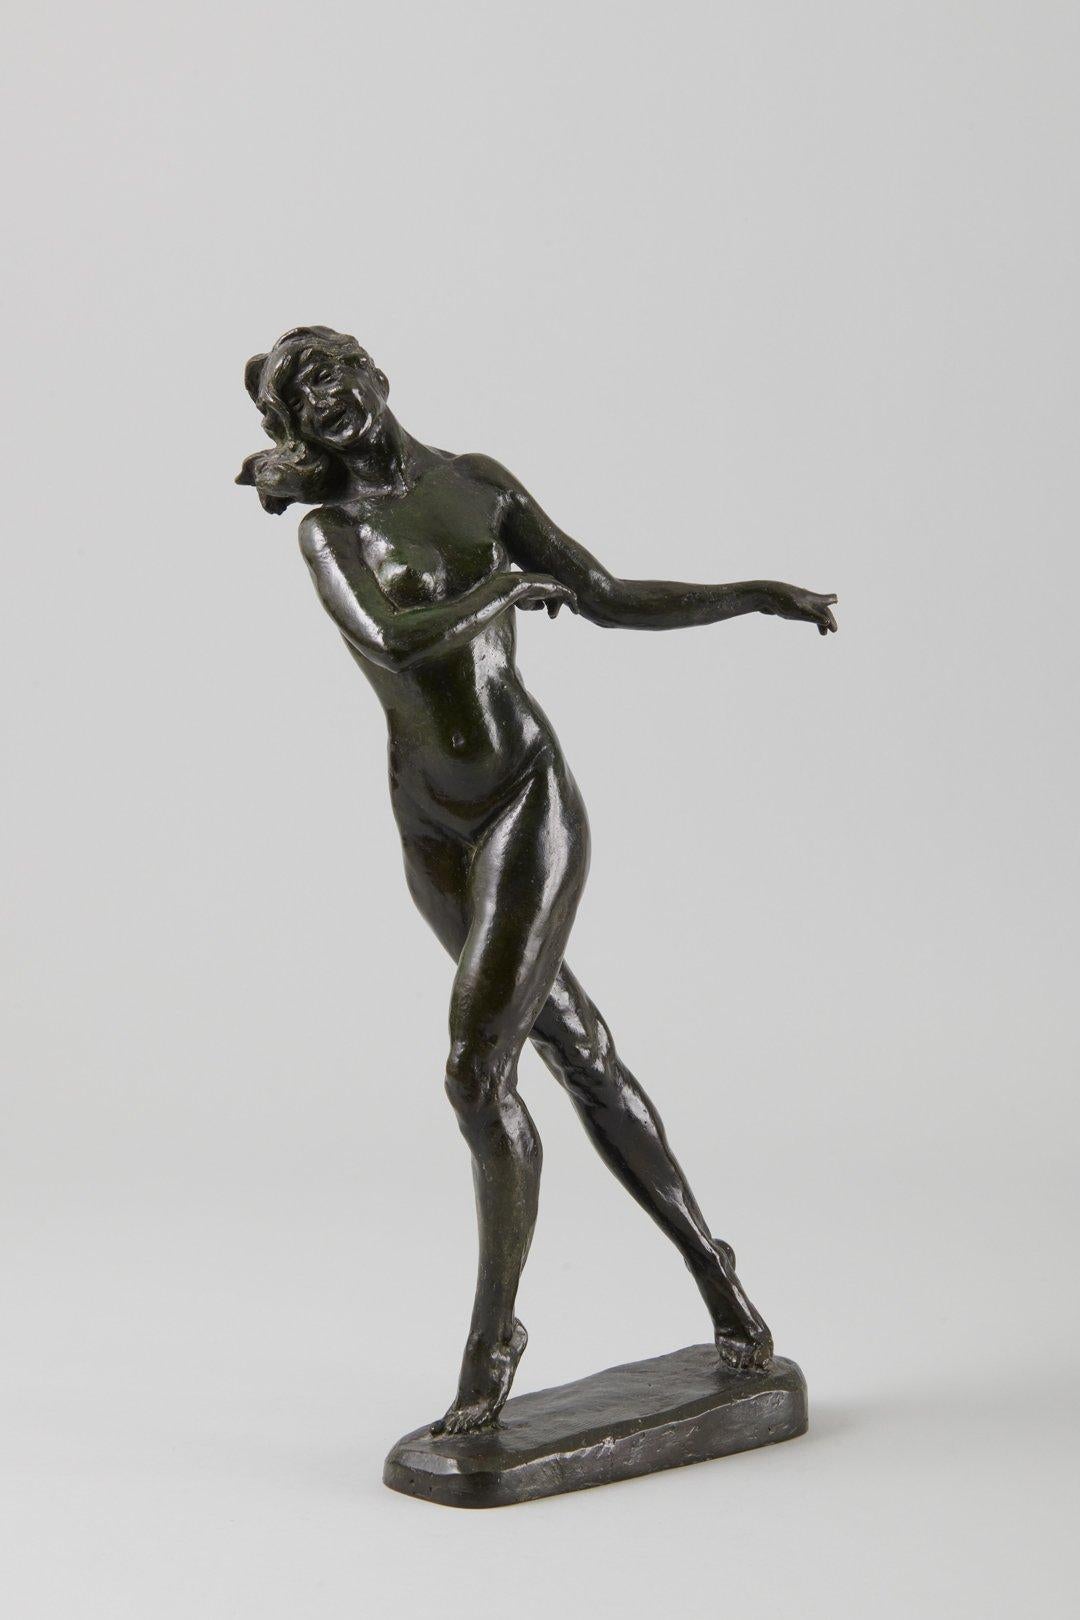 Max Kalish (américain, 1891-1945)
Nu marchant, 1930
Bronze
Signé et daté sur la base
17 x 9 x 4 pouces

Né en Pologne le 1er mars 1891, le sculpteur figuratif Max Kalish est arrivé aux États-Unis en 1894, sa famille s'installant dans l'Ohio. Jeune